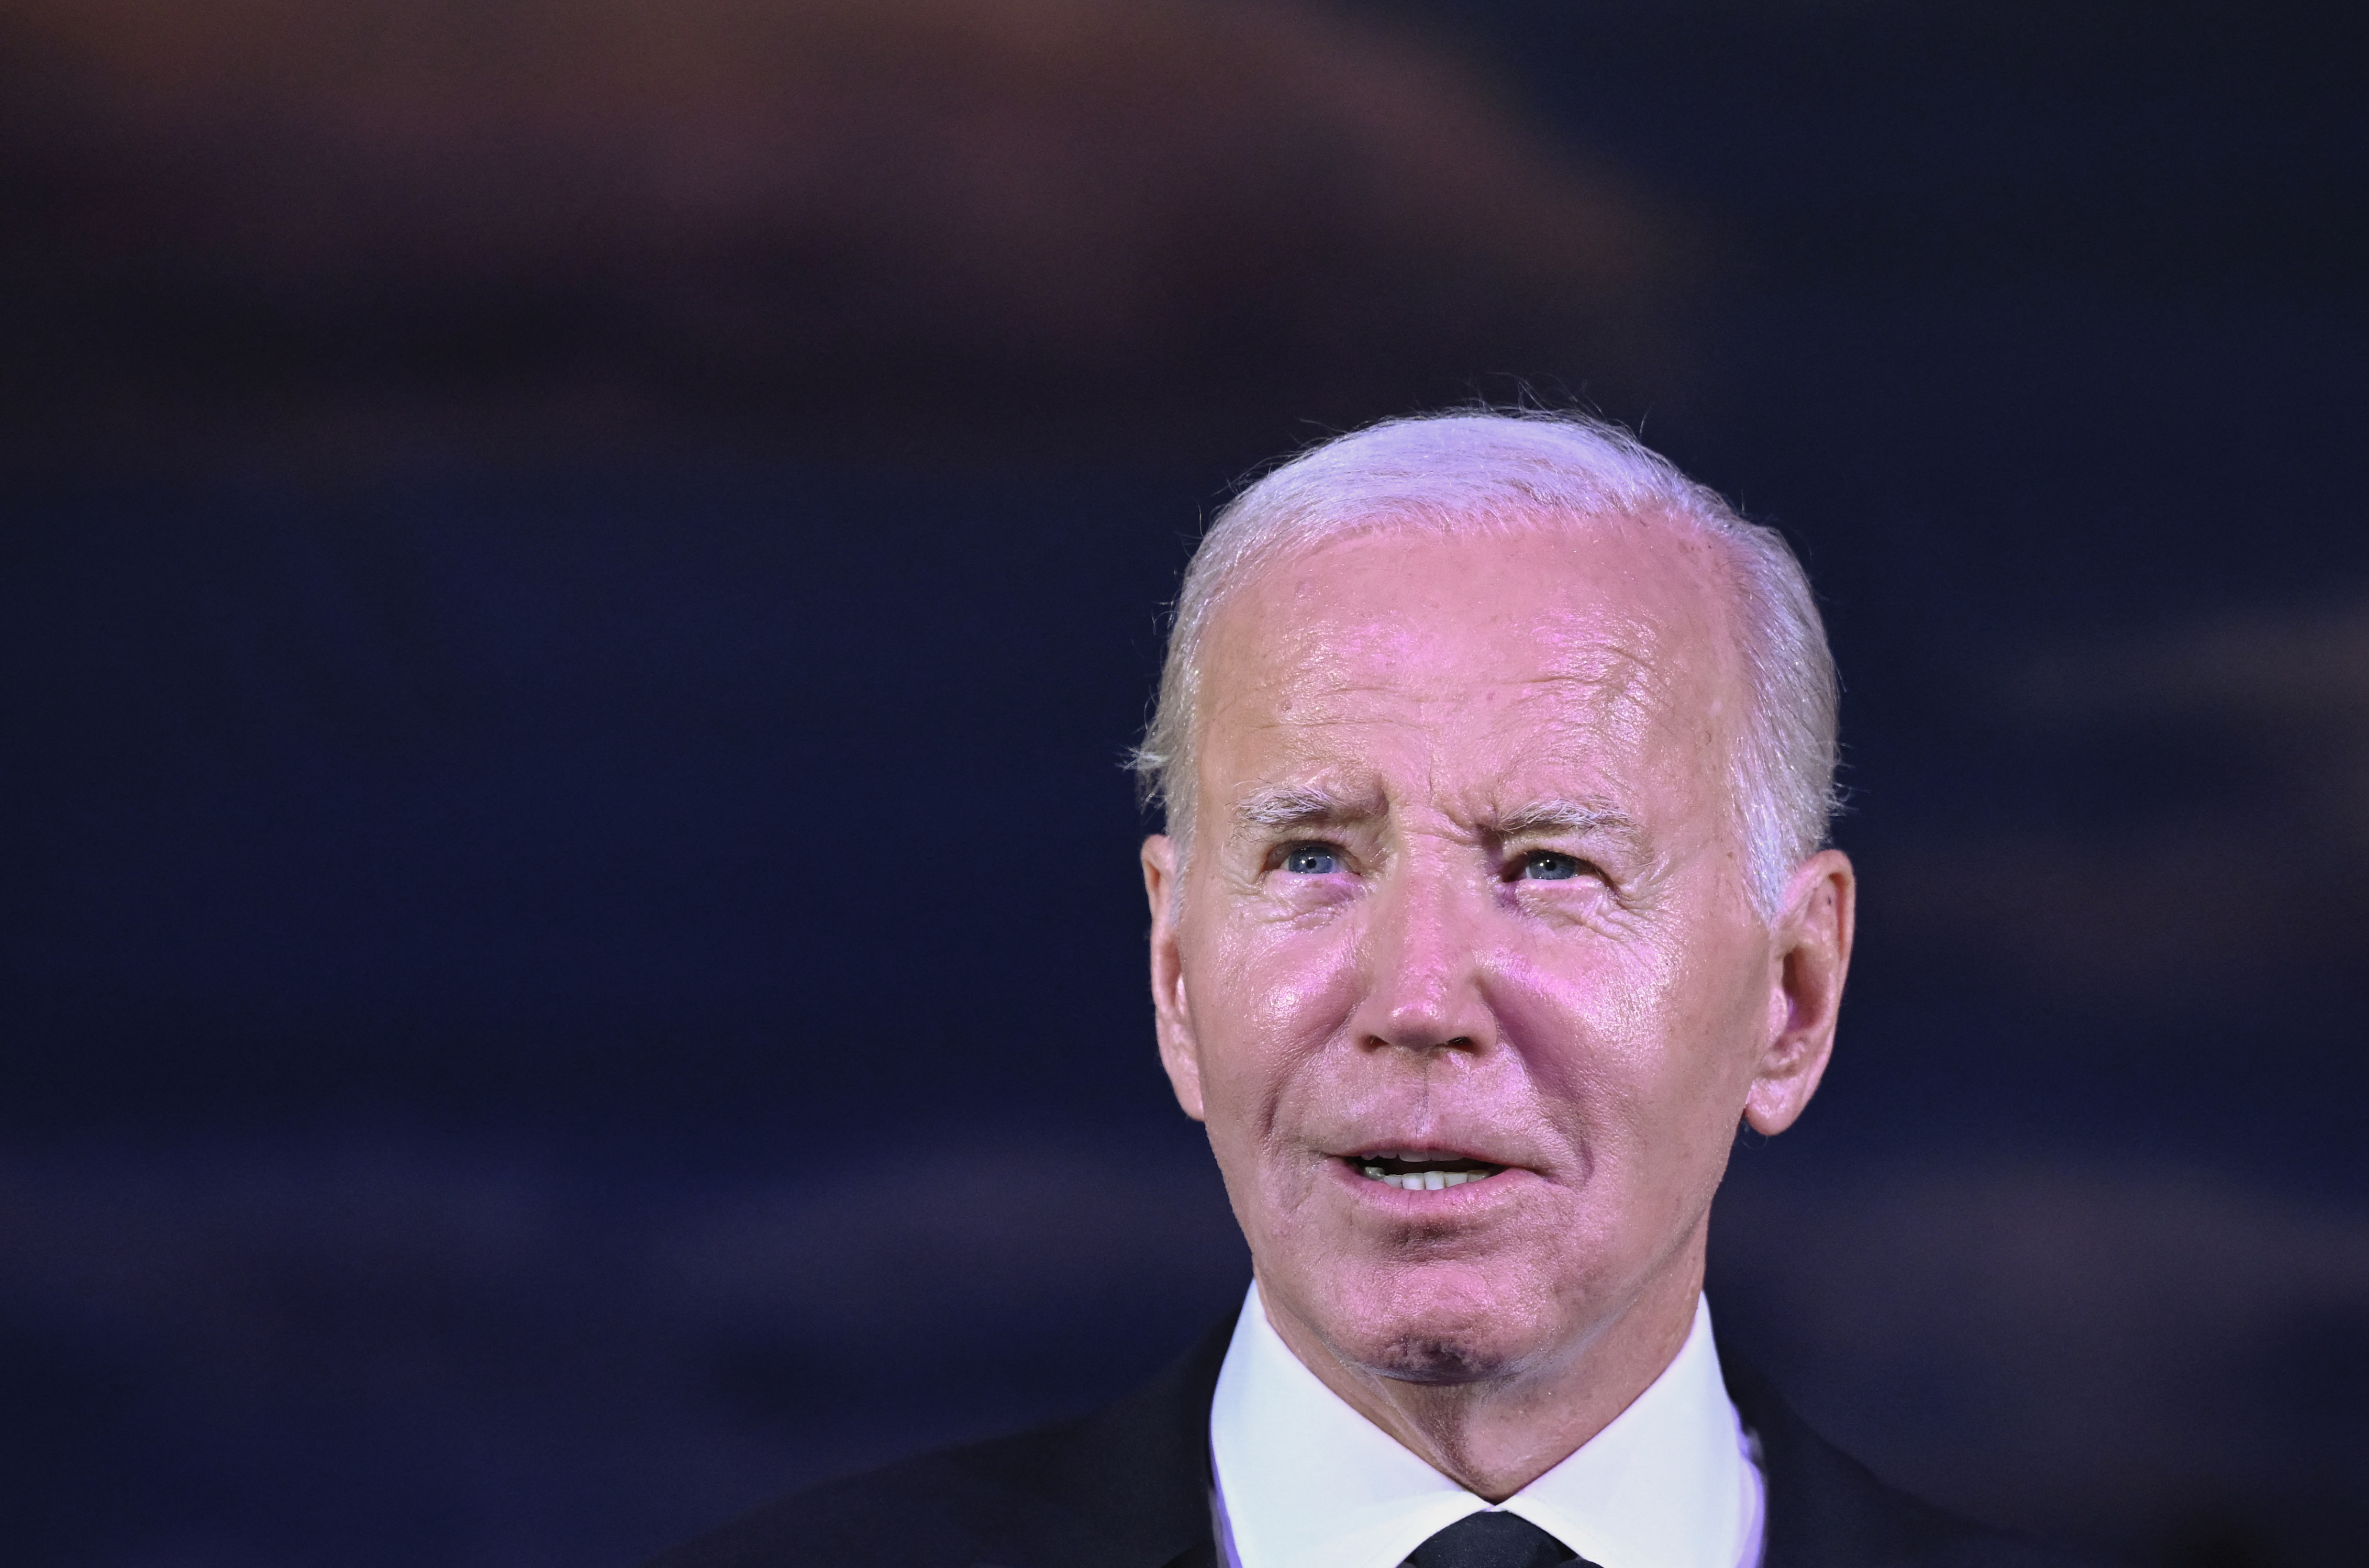 Biden viaja a Minnesota para evento de campaña y recaudación de fondos (Video)